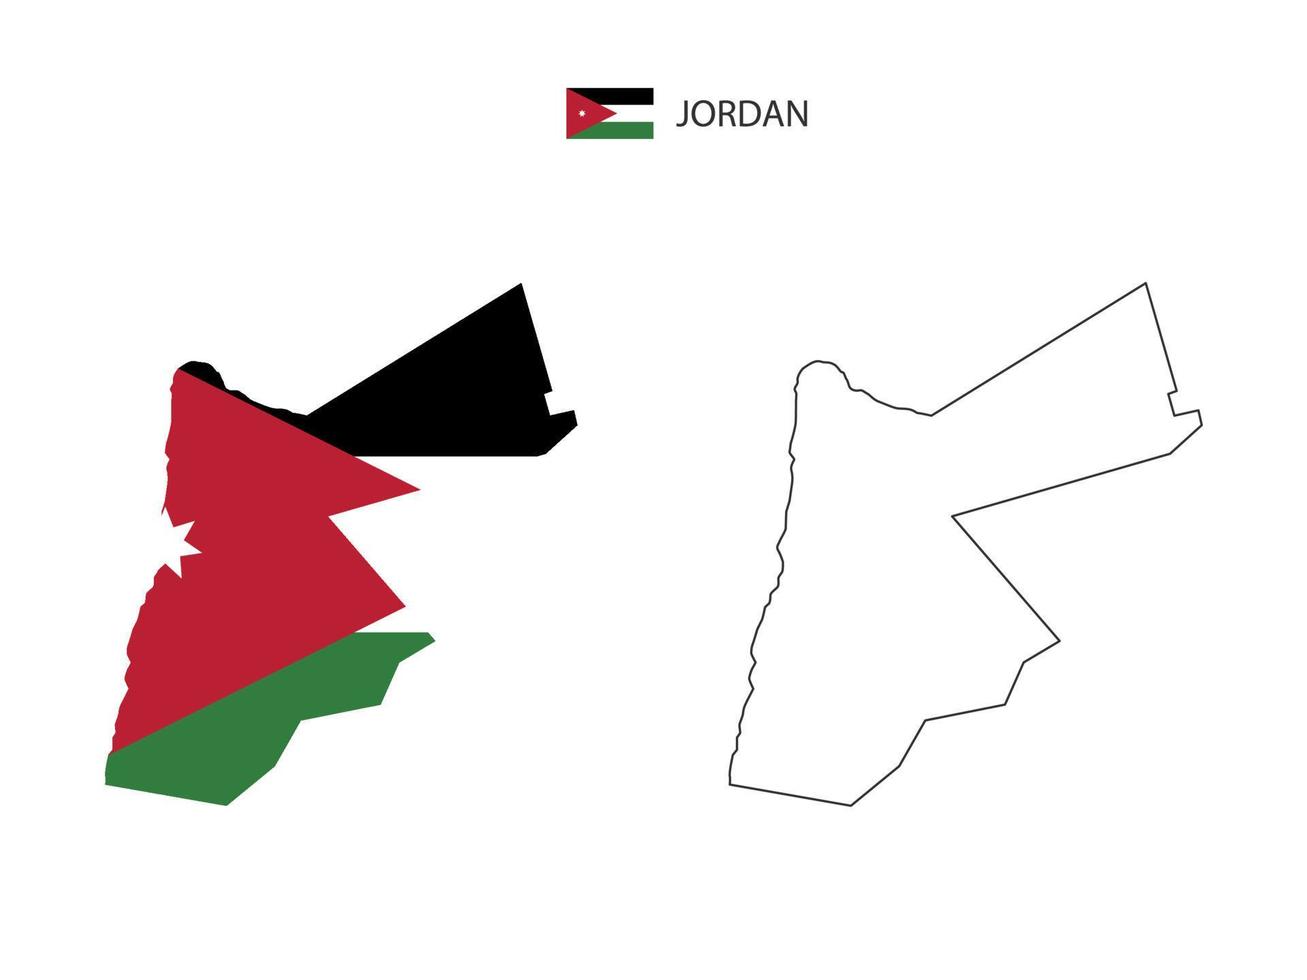 Jordanië kaart stad vector verdeeld door schets eenvoud stijl. hebben 2 versies, zwart dun lijn versie en kleur van land vlag versie. beide kaart waren Aan de wit achtergrond.